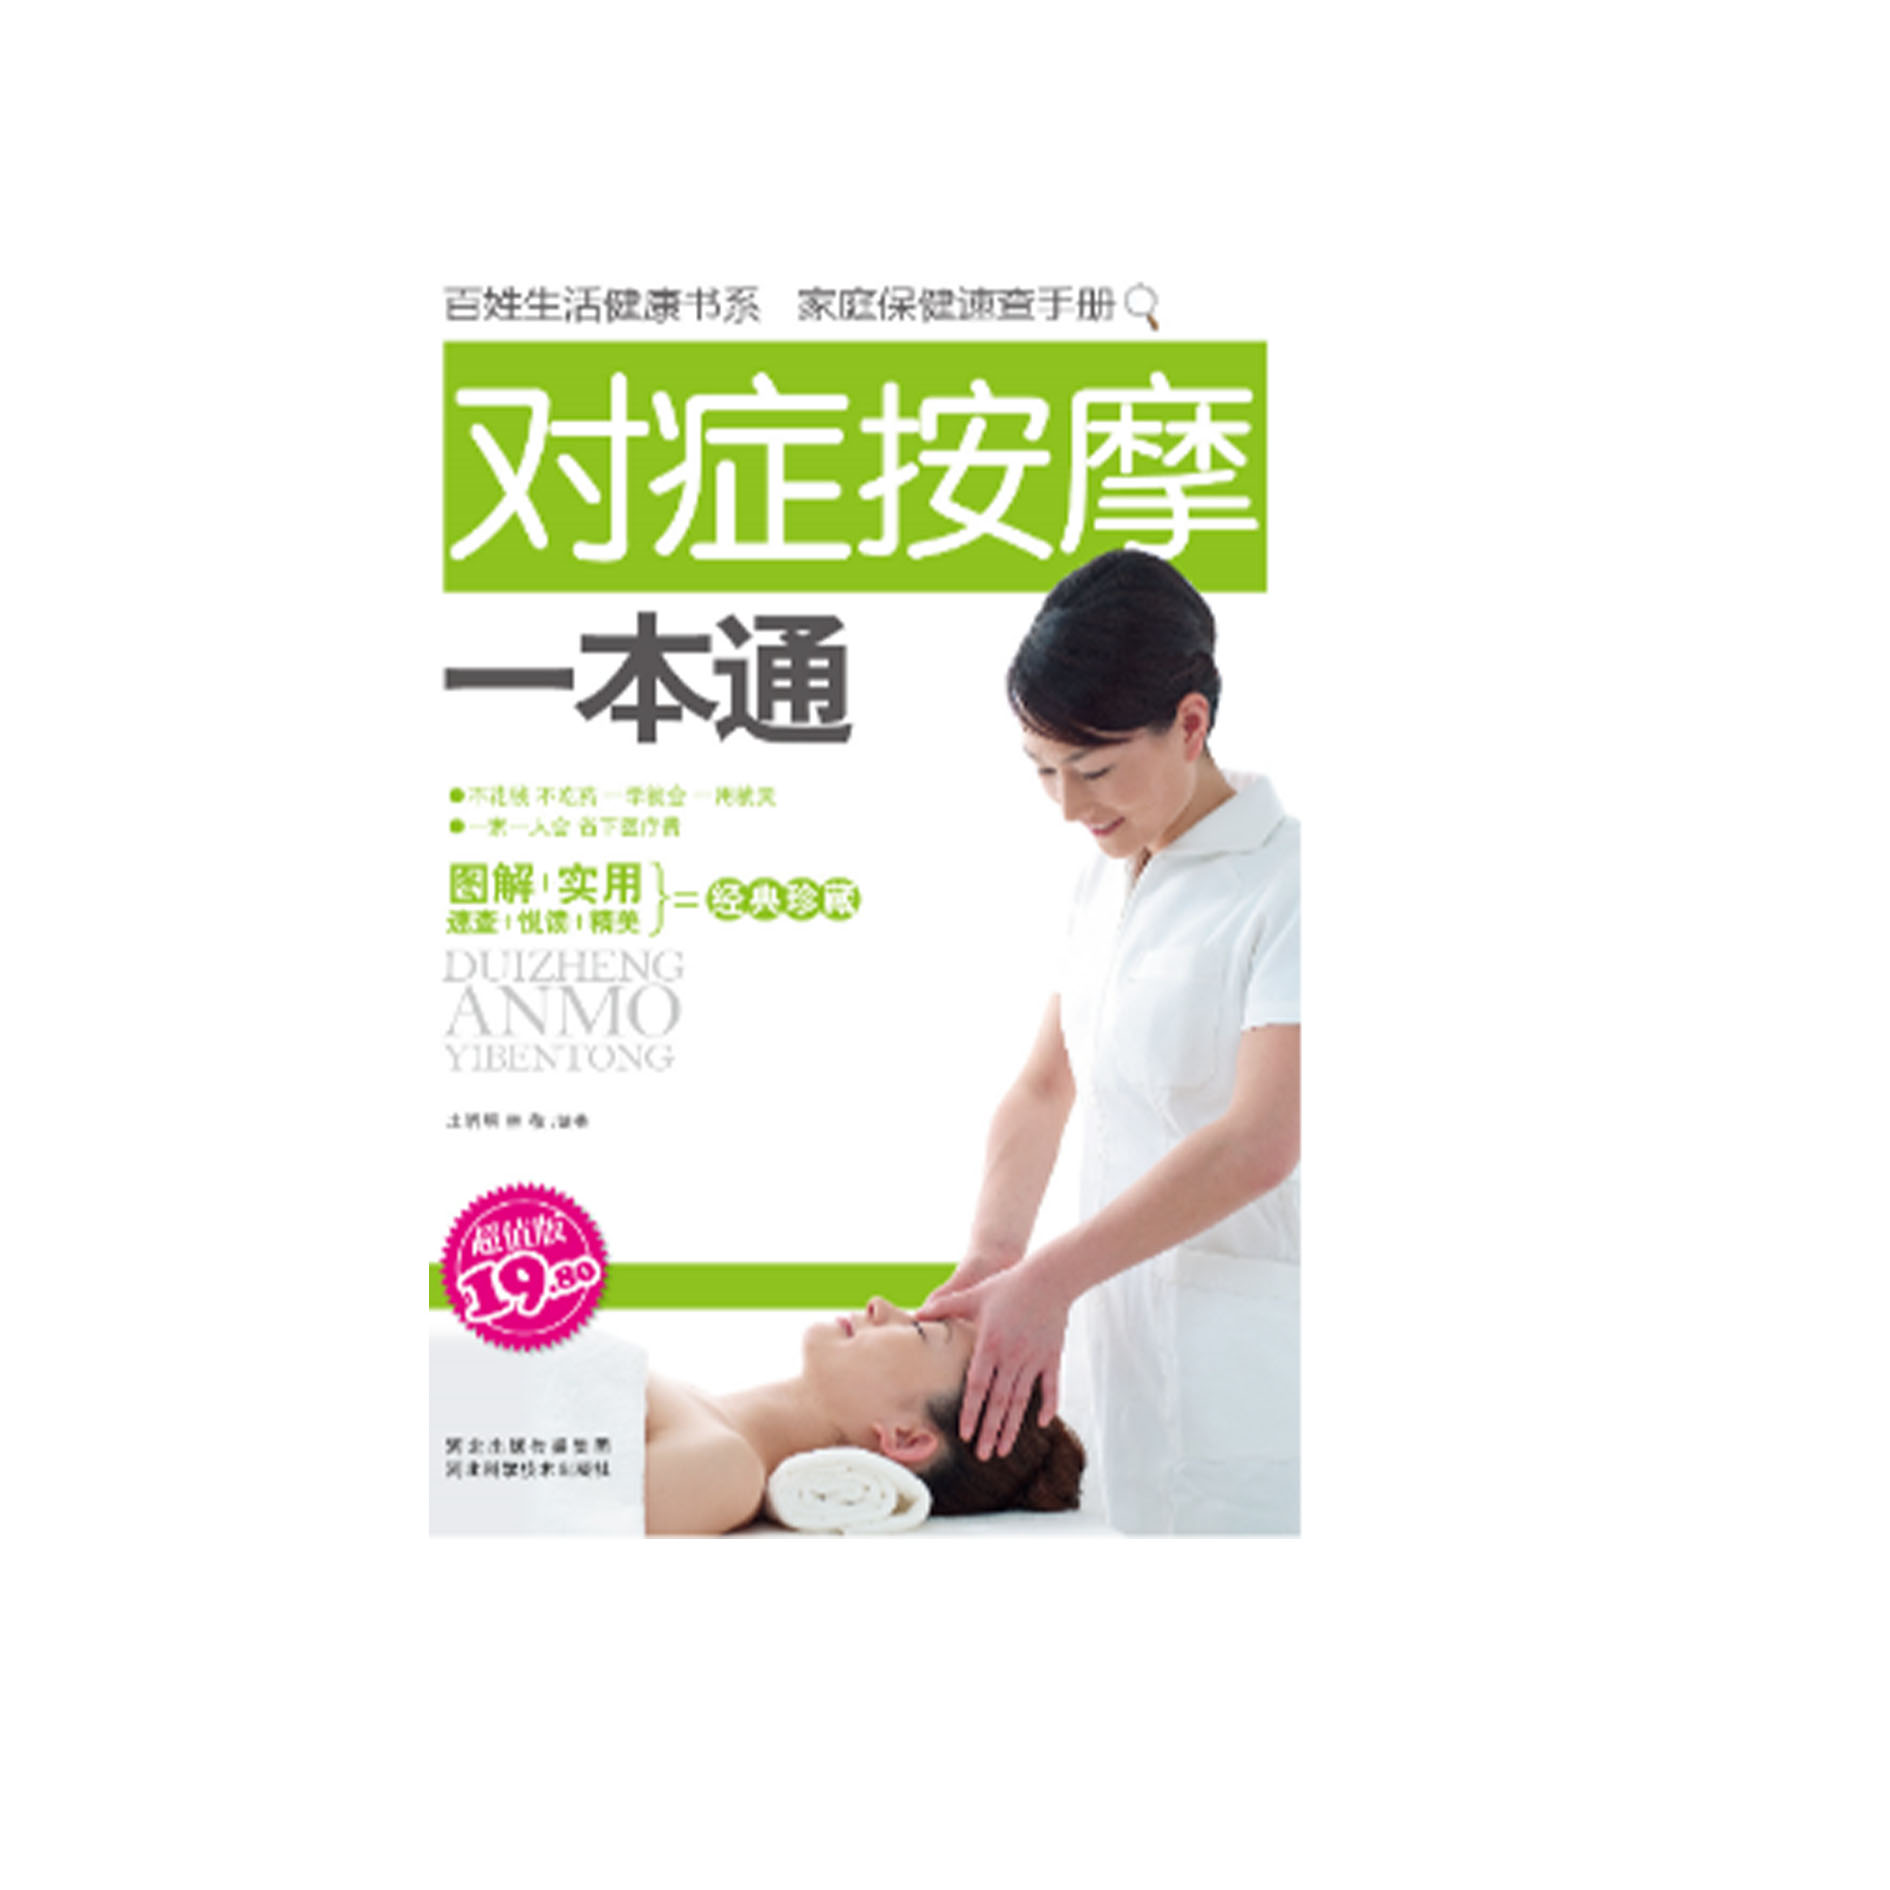 Handbook of Massage